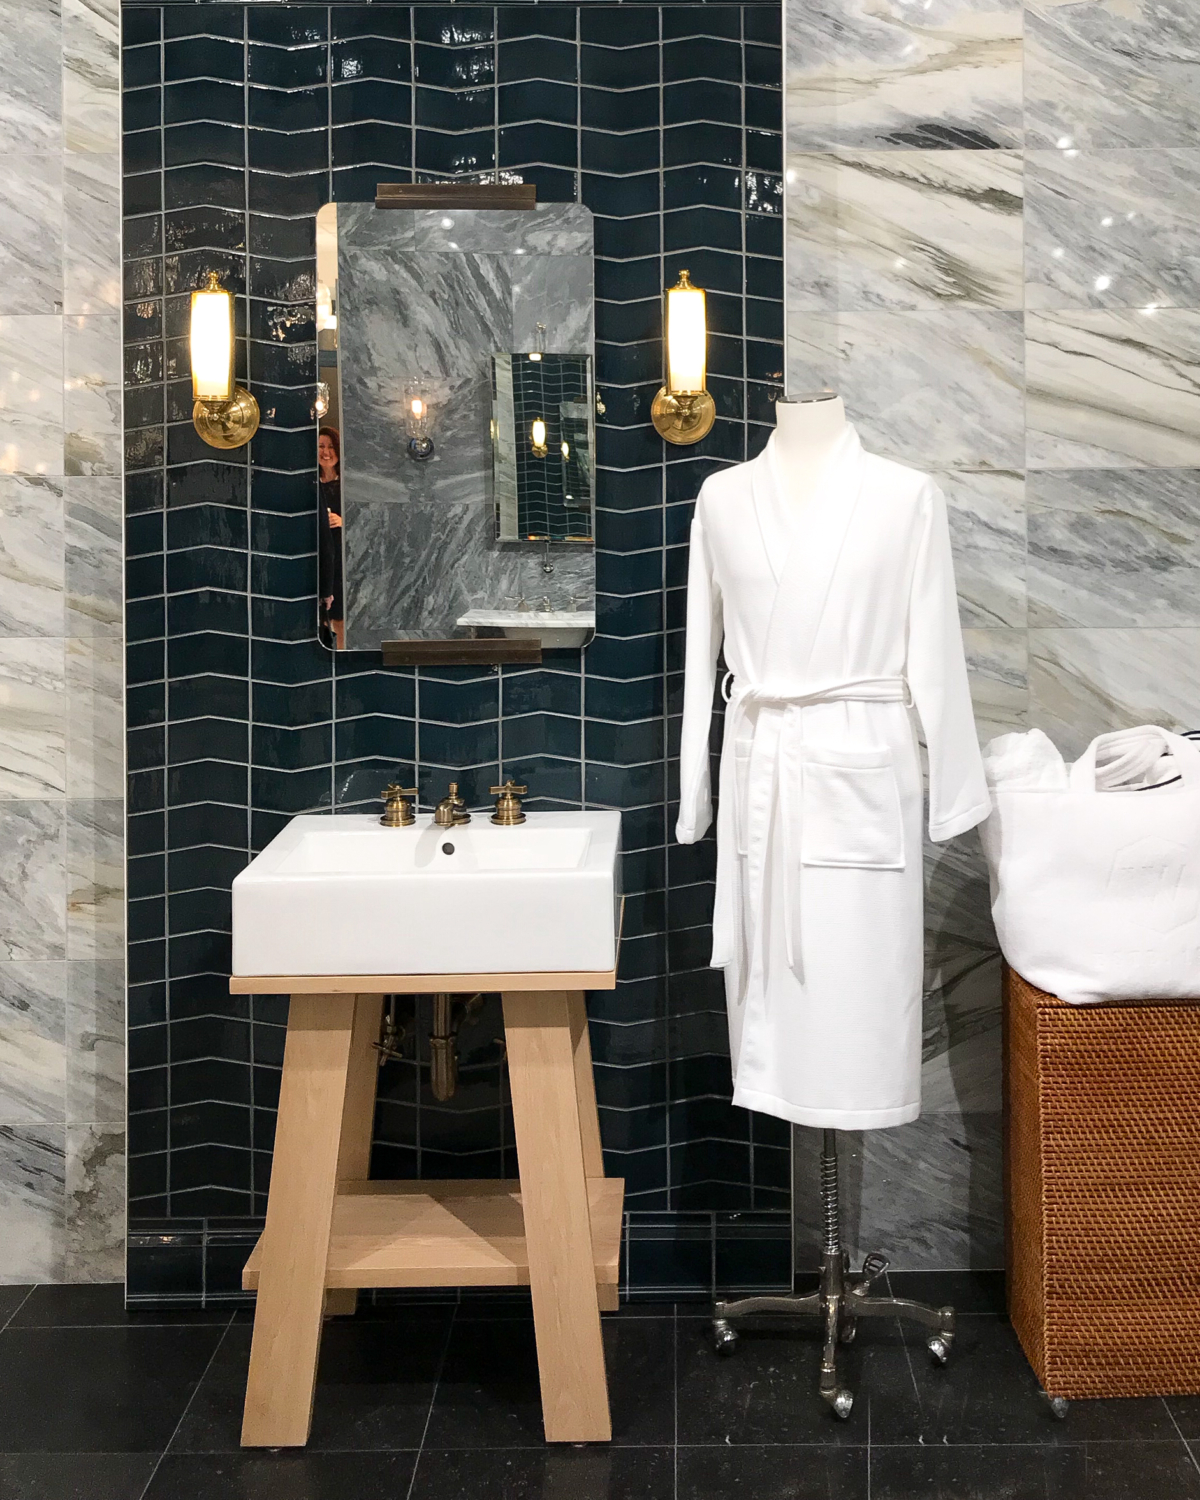 Bathroom ideas - marble, navy blue tile, brass sconces